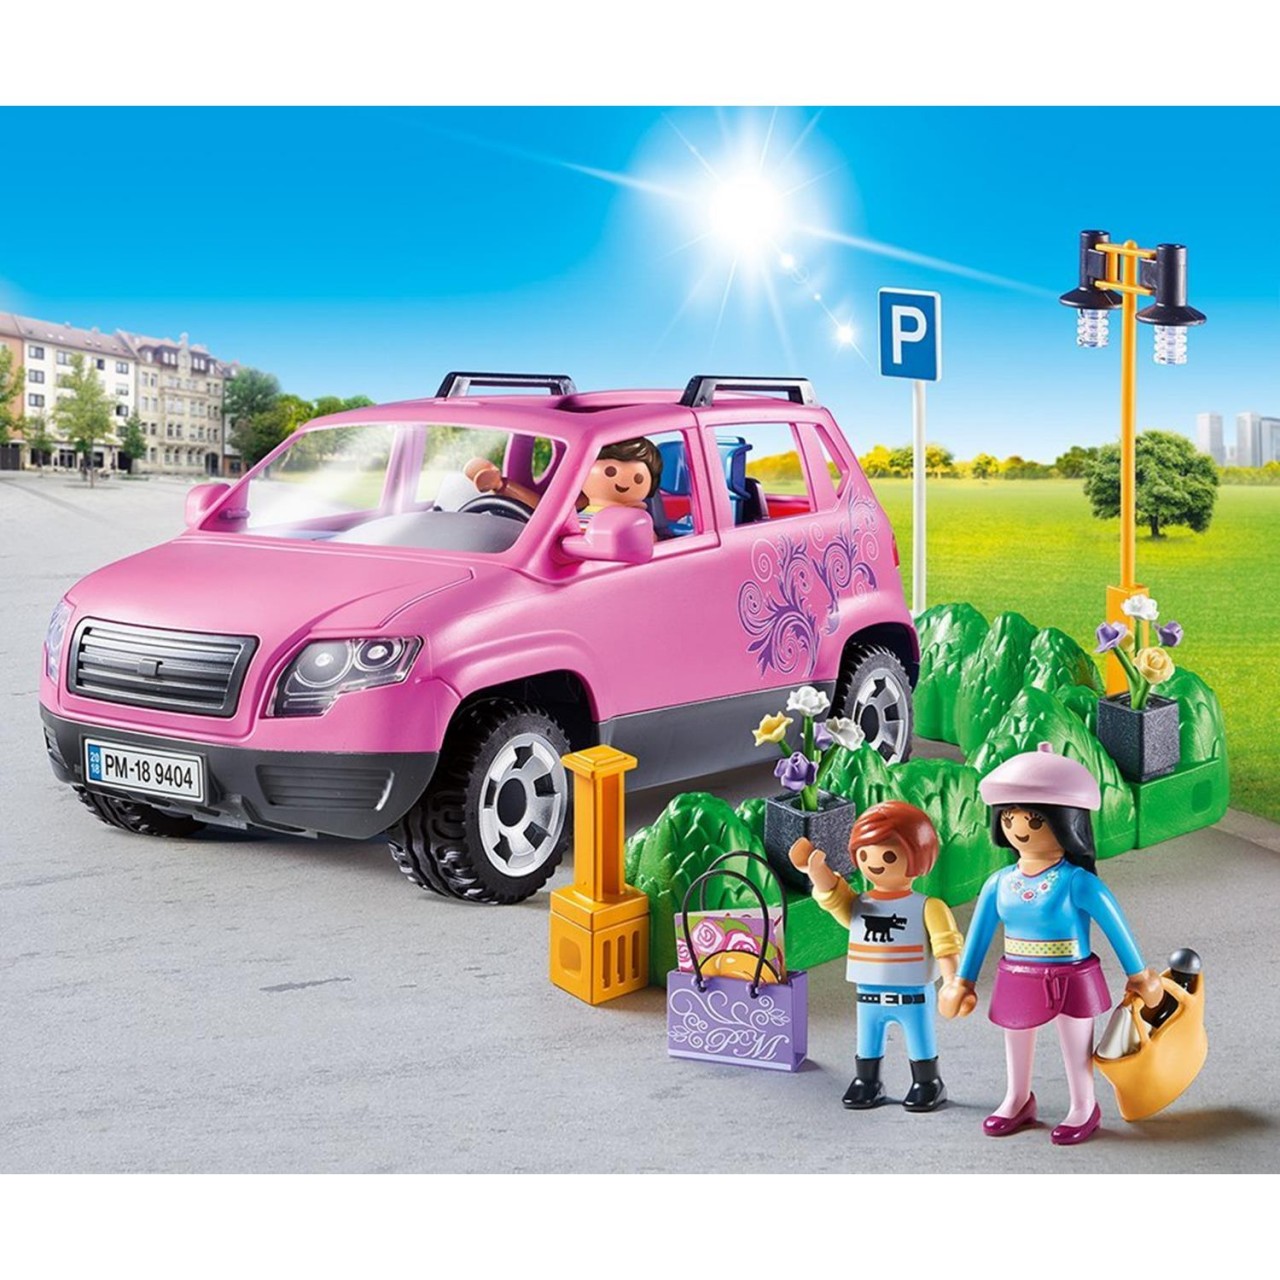 Playmobil 9404 Familien-Pkw mit Parkbucht